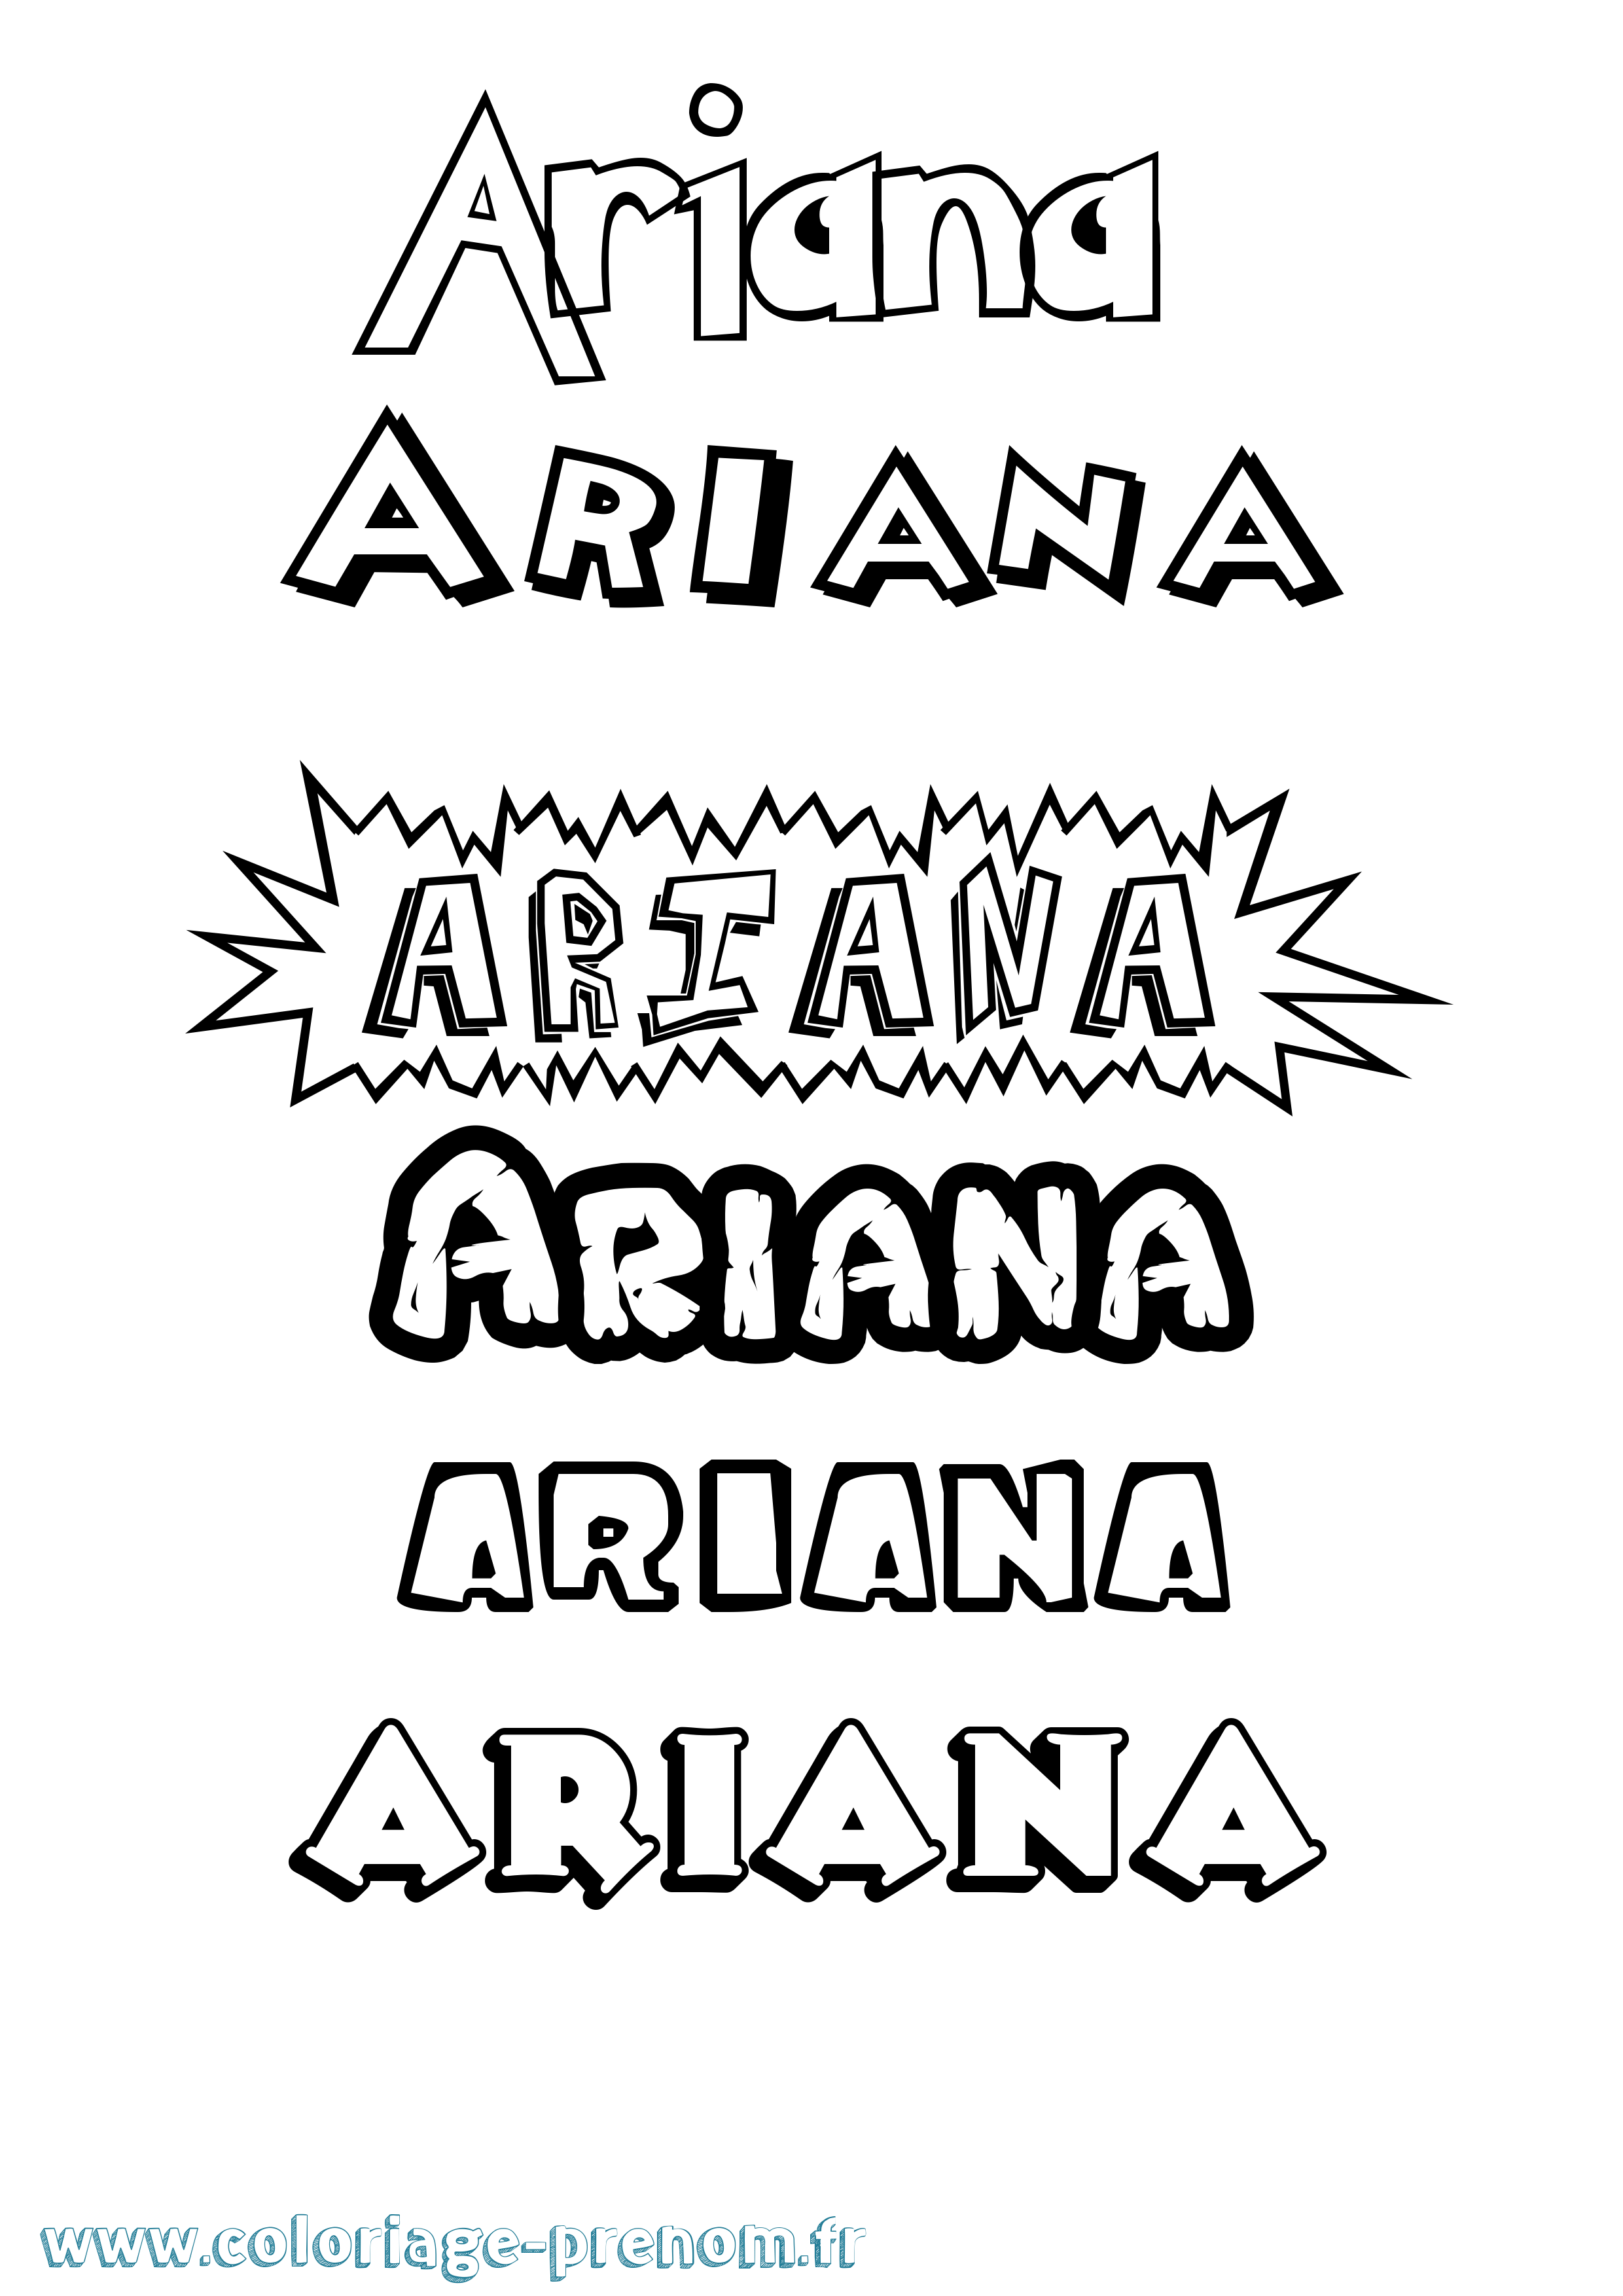 Coloriage prénom Ariana